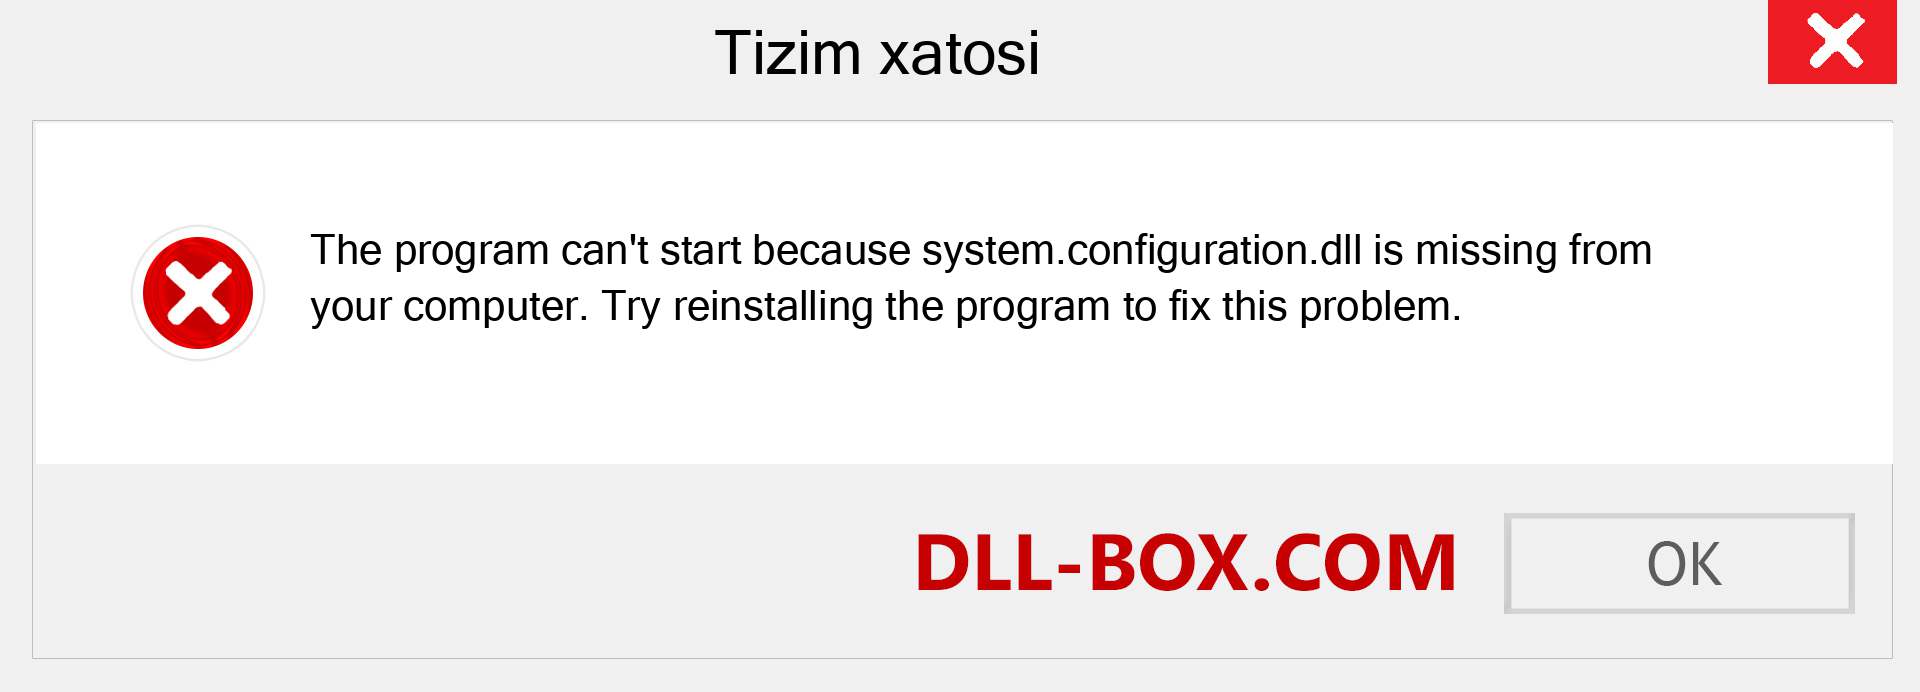 system.configuration.dll fayli yo'qolganmi?. Windows 7, 8, 10 uchun yuklab olish - Windowsda system.configuration dll etishmayotgan xatoni tuzating, rasmlar, rasmlar